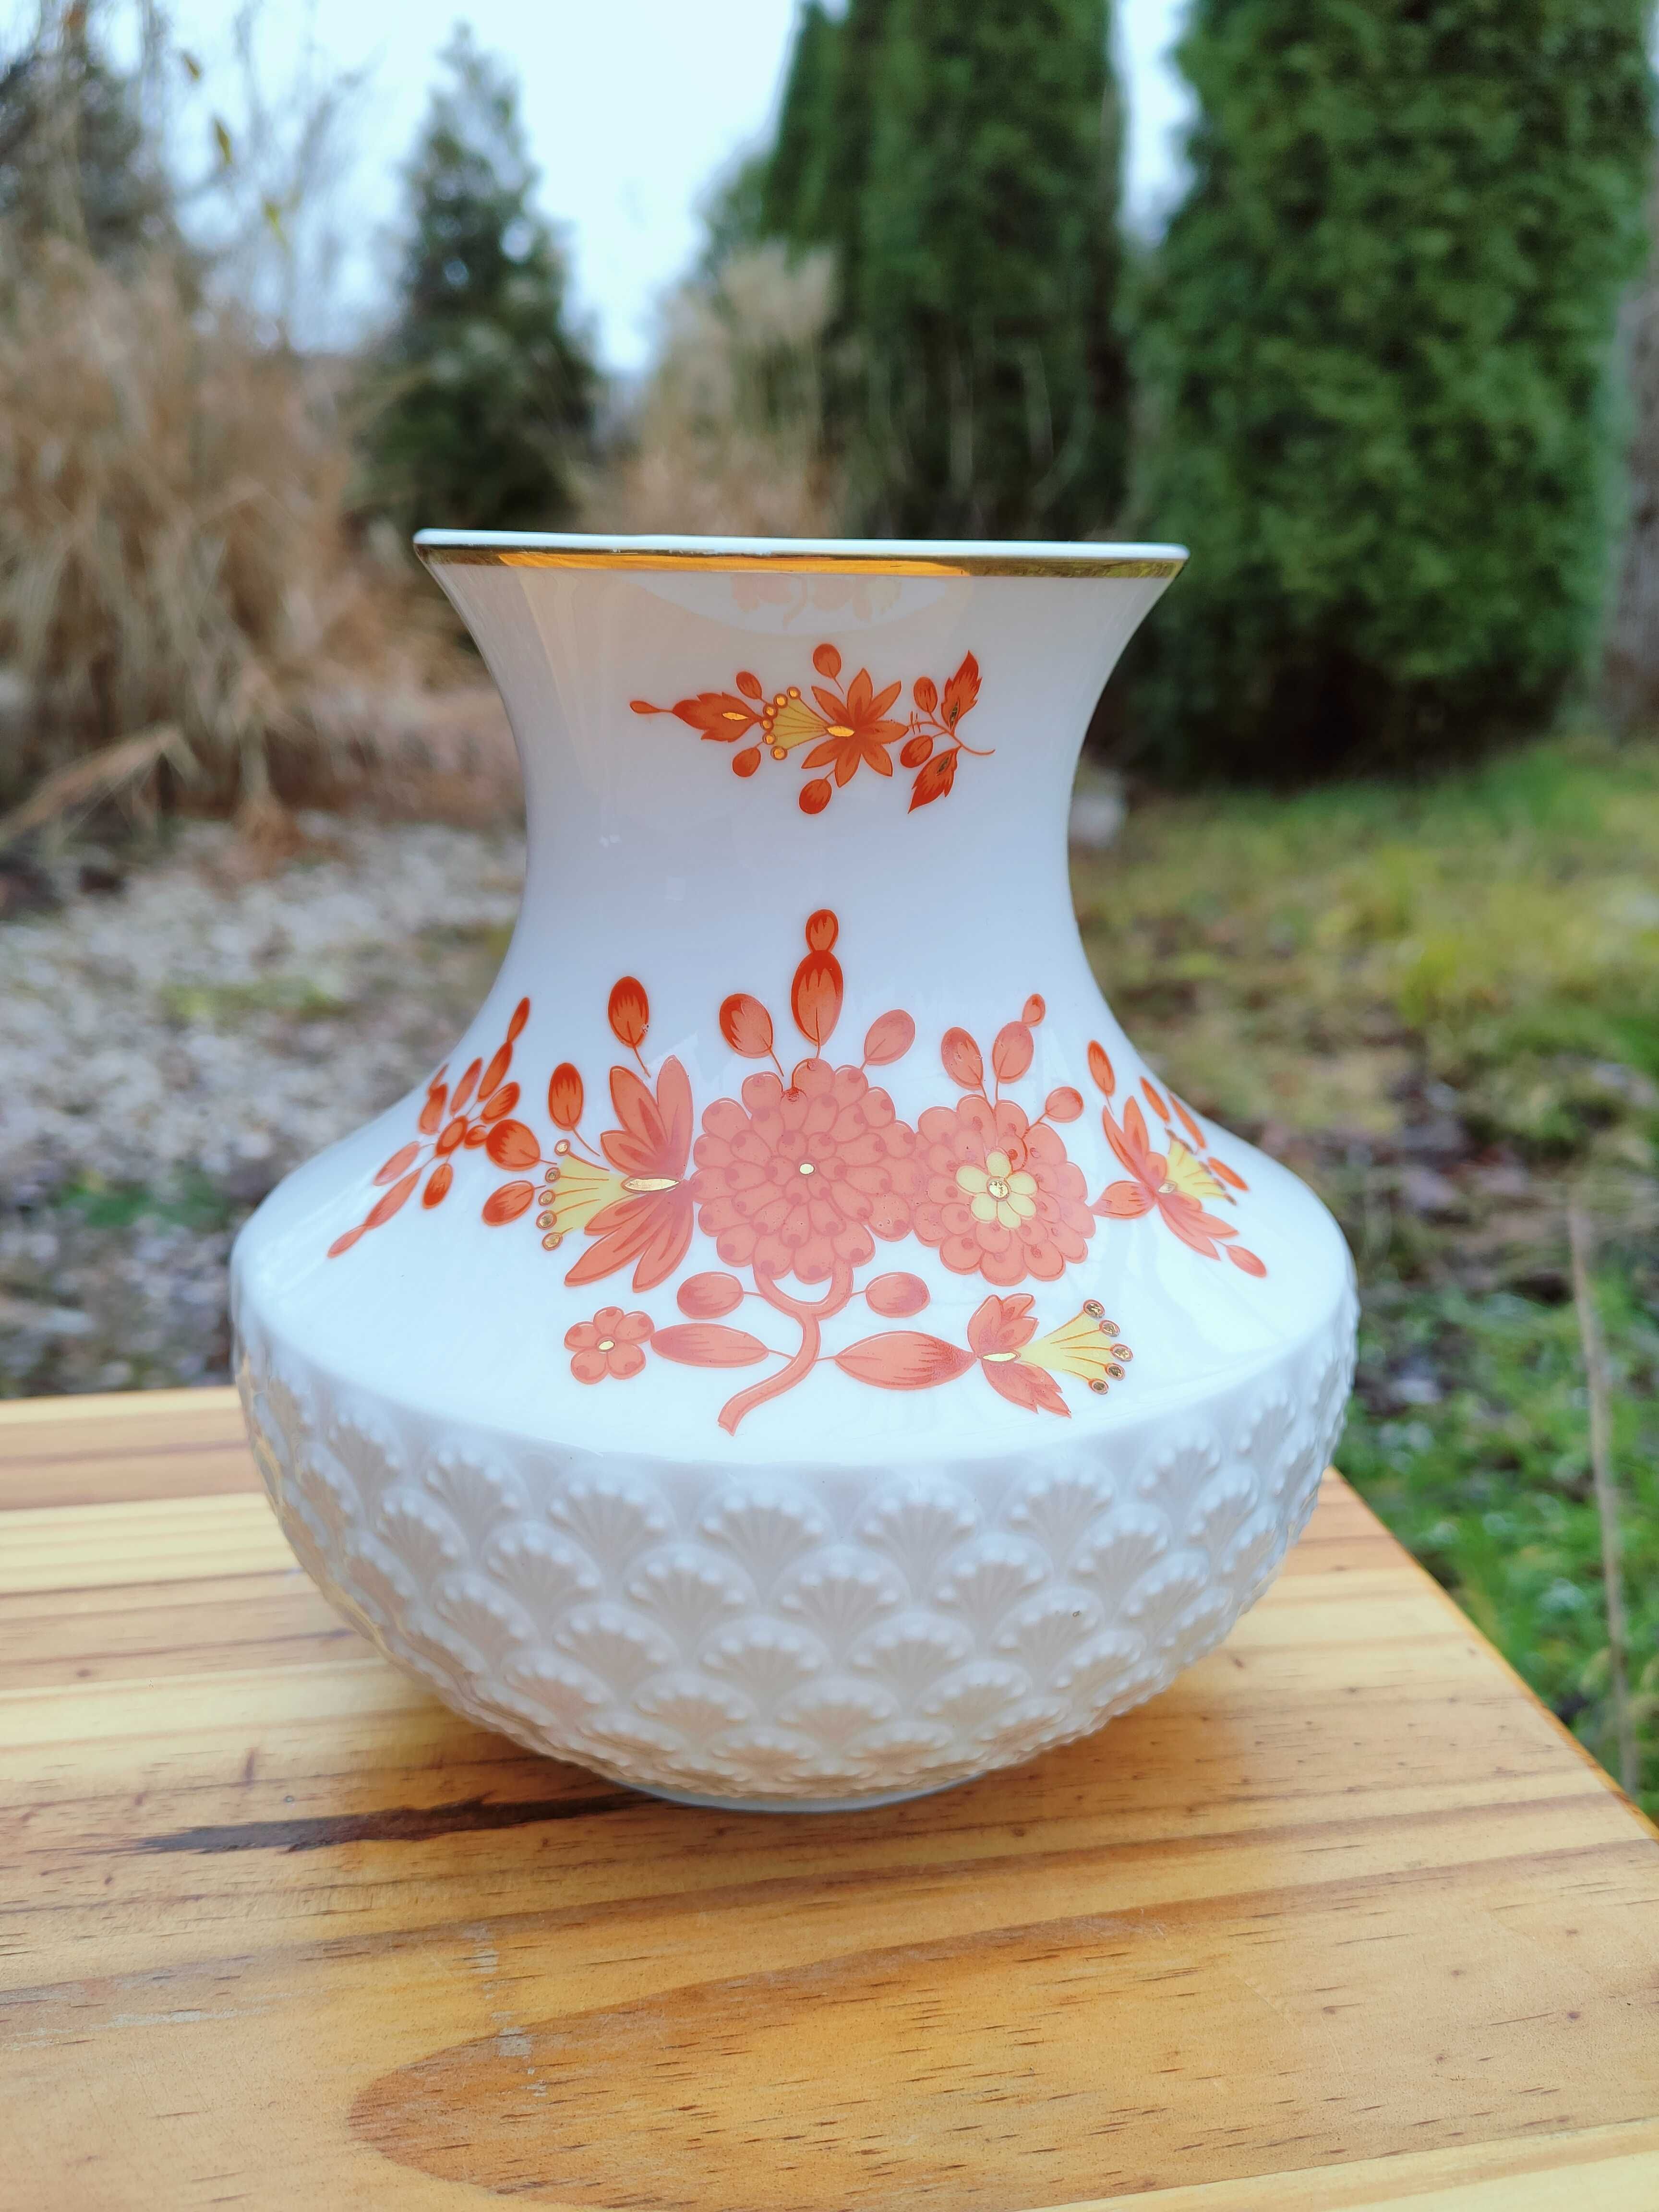 Śliczny wazon w pomarańczowe kwiaty - Hutschenreuther